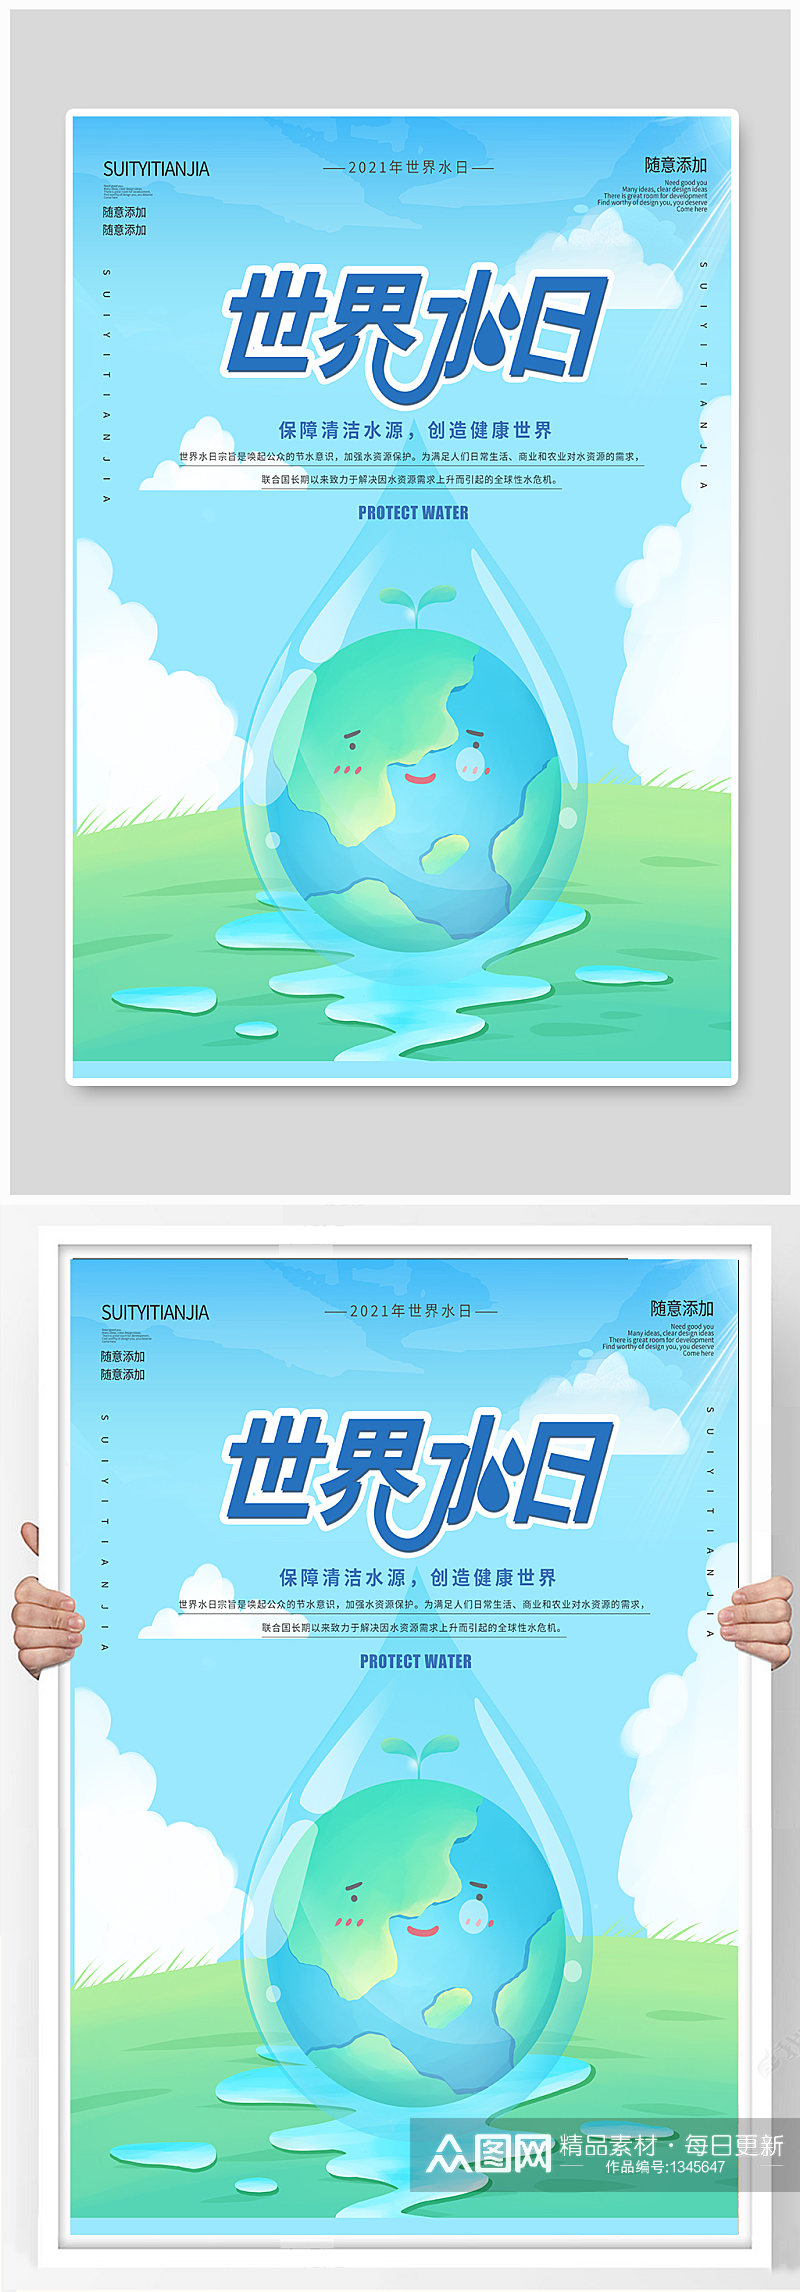 世界水日暨中国水周保护水资源创意海报素材